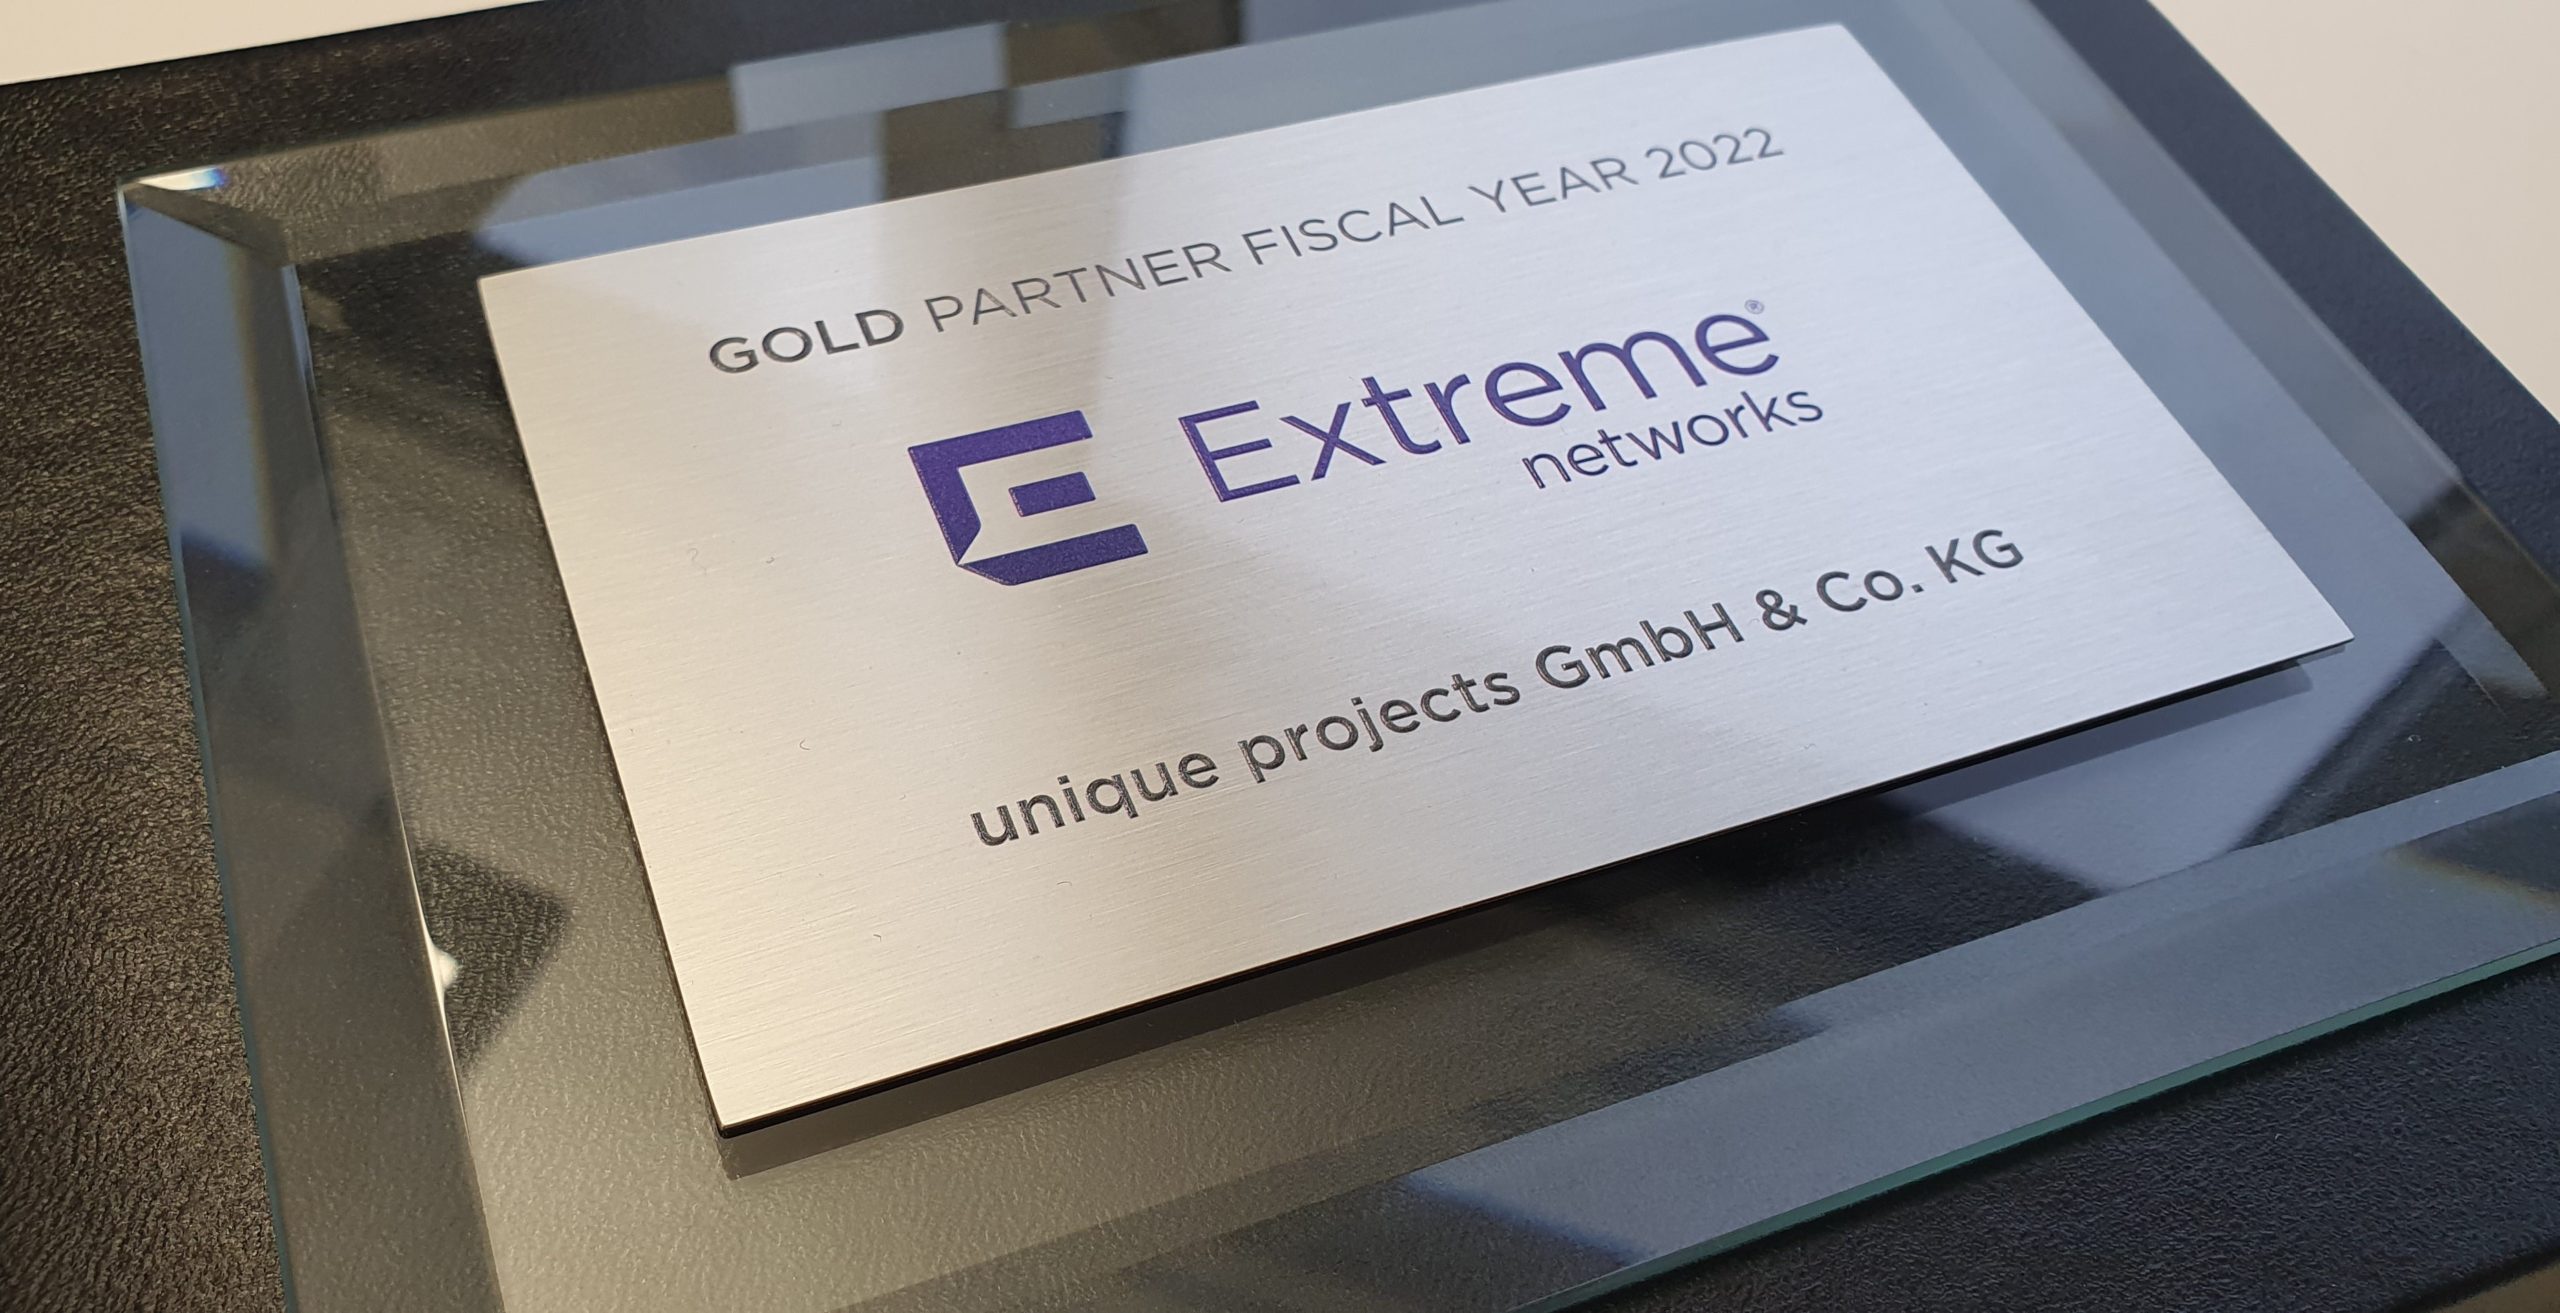 extreme networks gold partner up kl